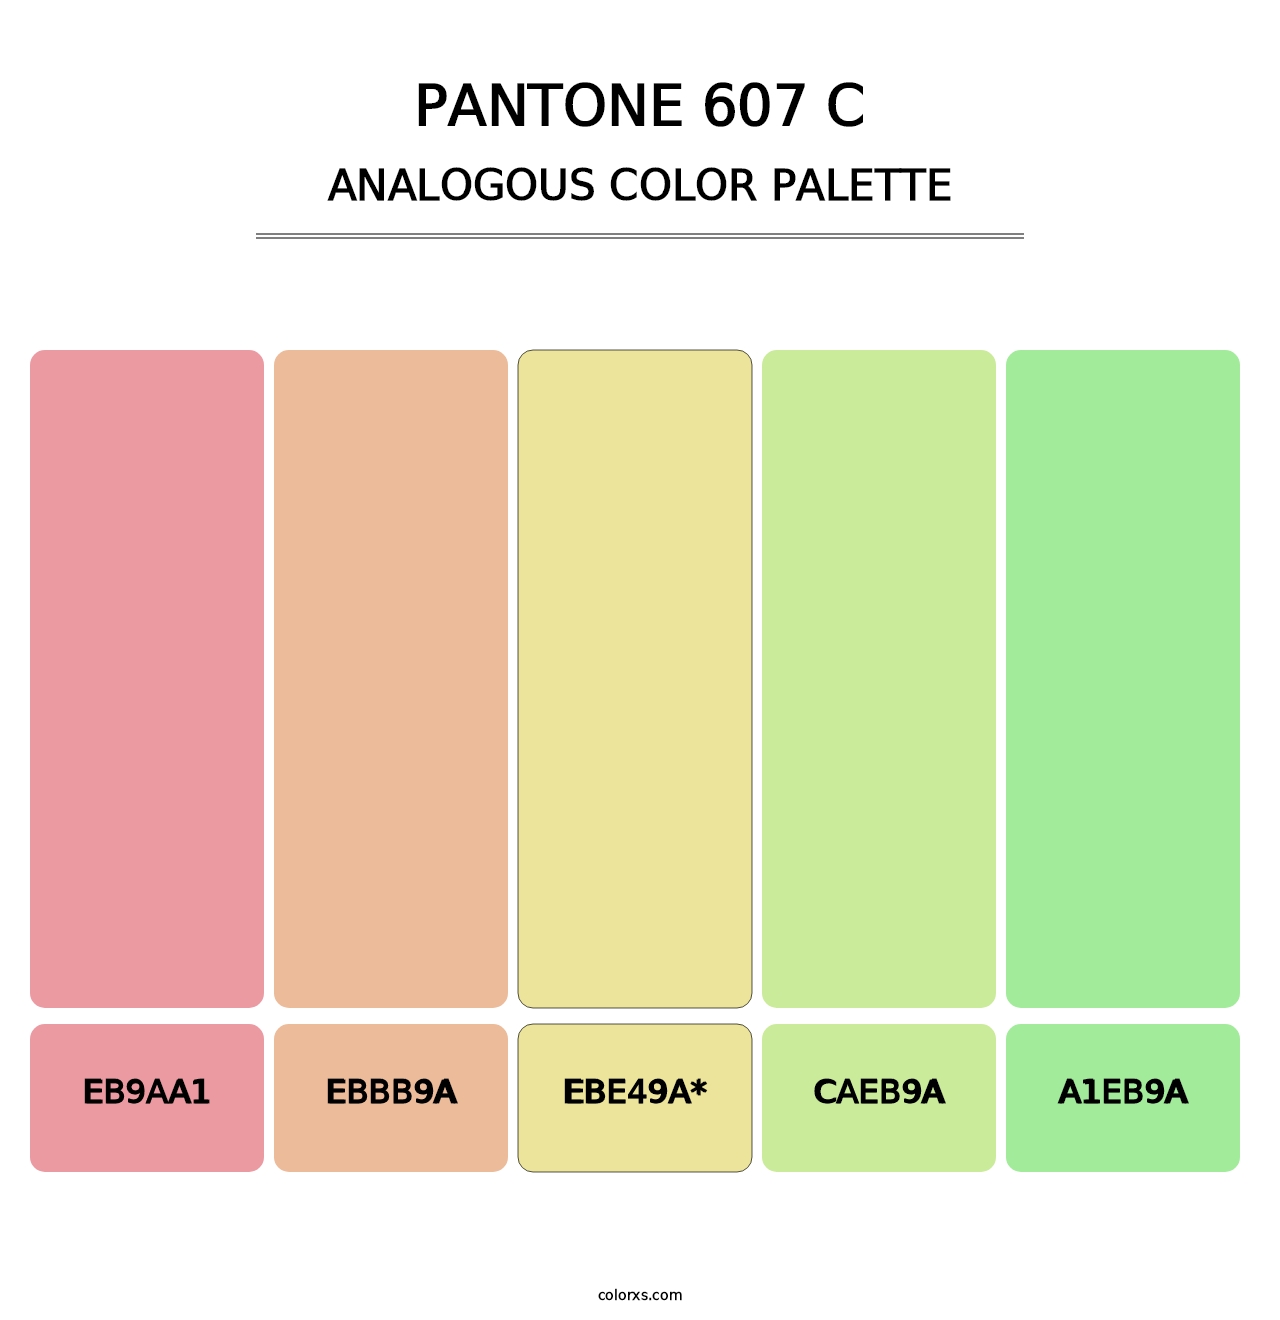 PANTONE 607 C - Analogous Color Palette